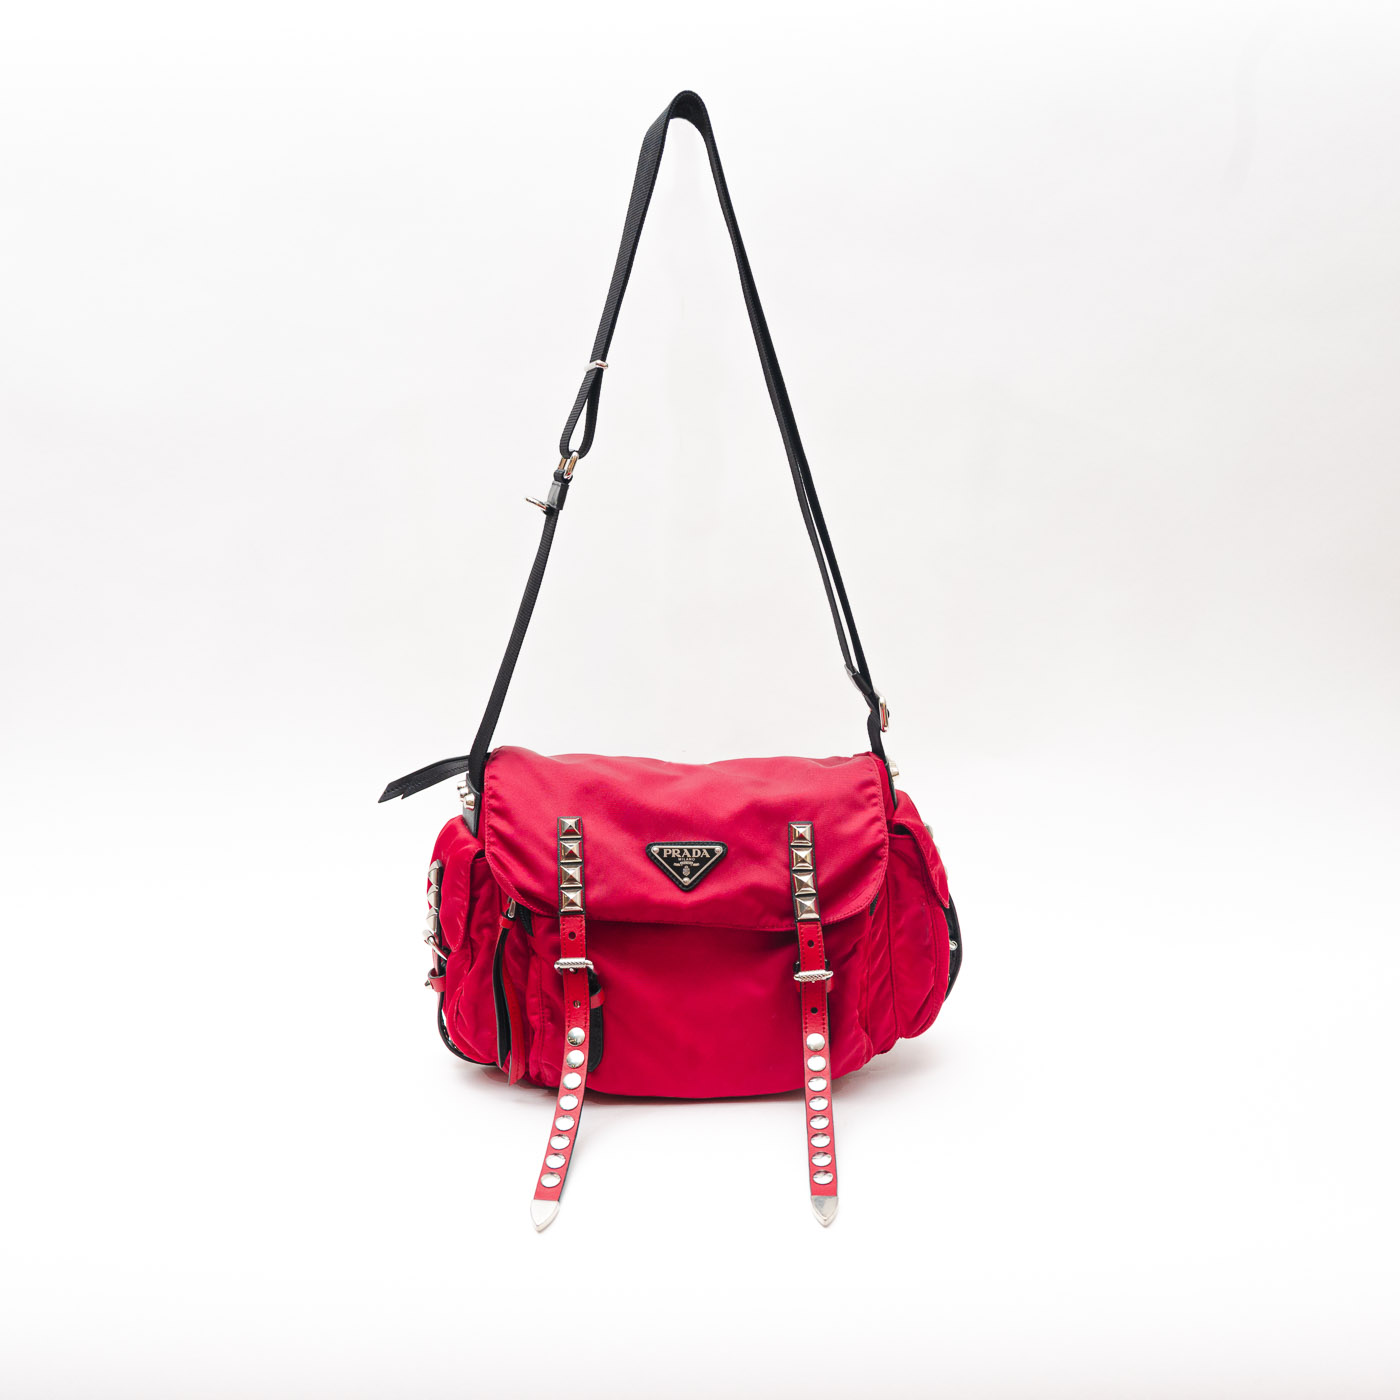 Bolso Prada Vela New Studded rojo - Vestidor Vintage - Moda primeras marcas mano y vintage